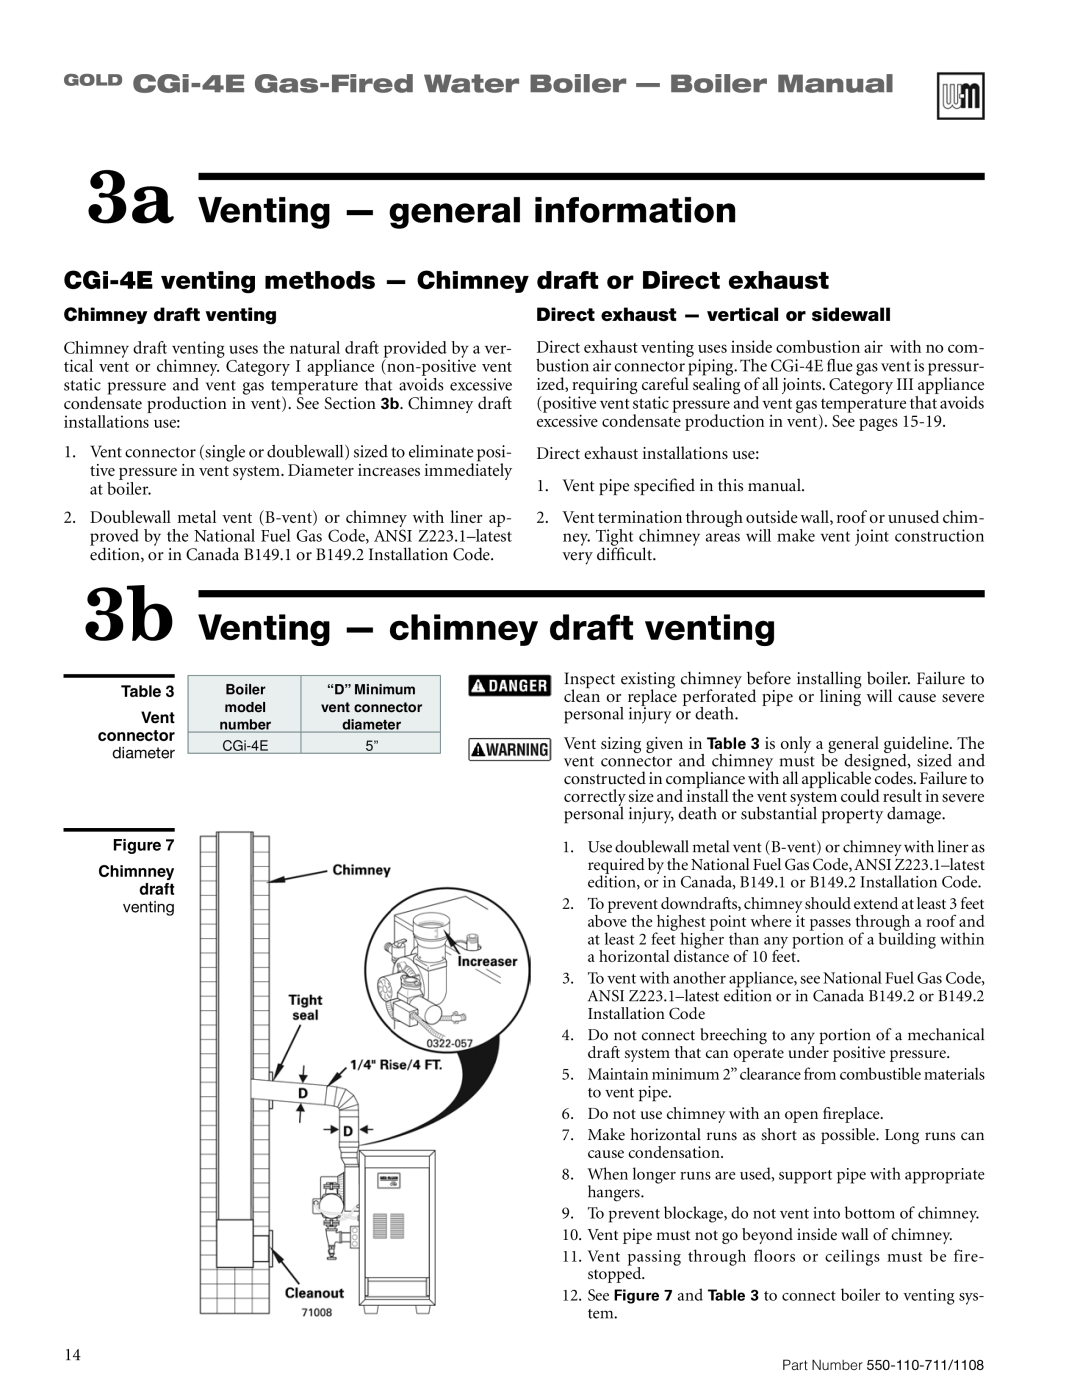 Weil-McLain CGI-4E manual 3a Venting — general information, Venting - chimney draft venting, Chimney draft venting 